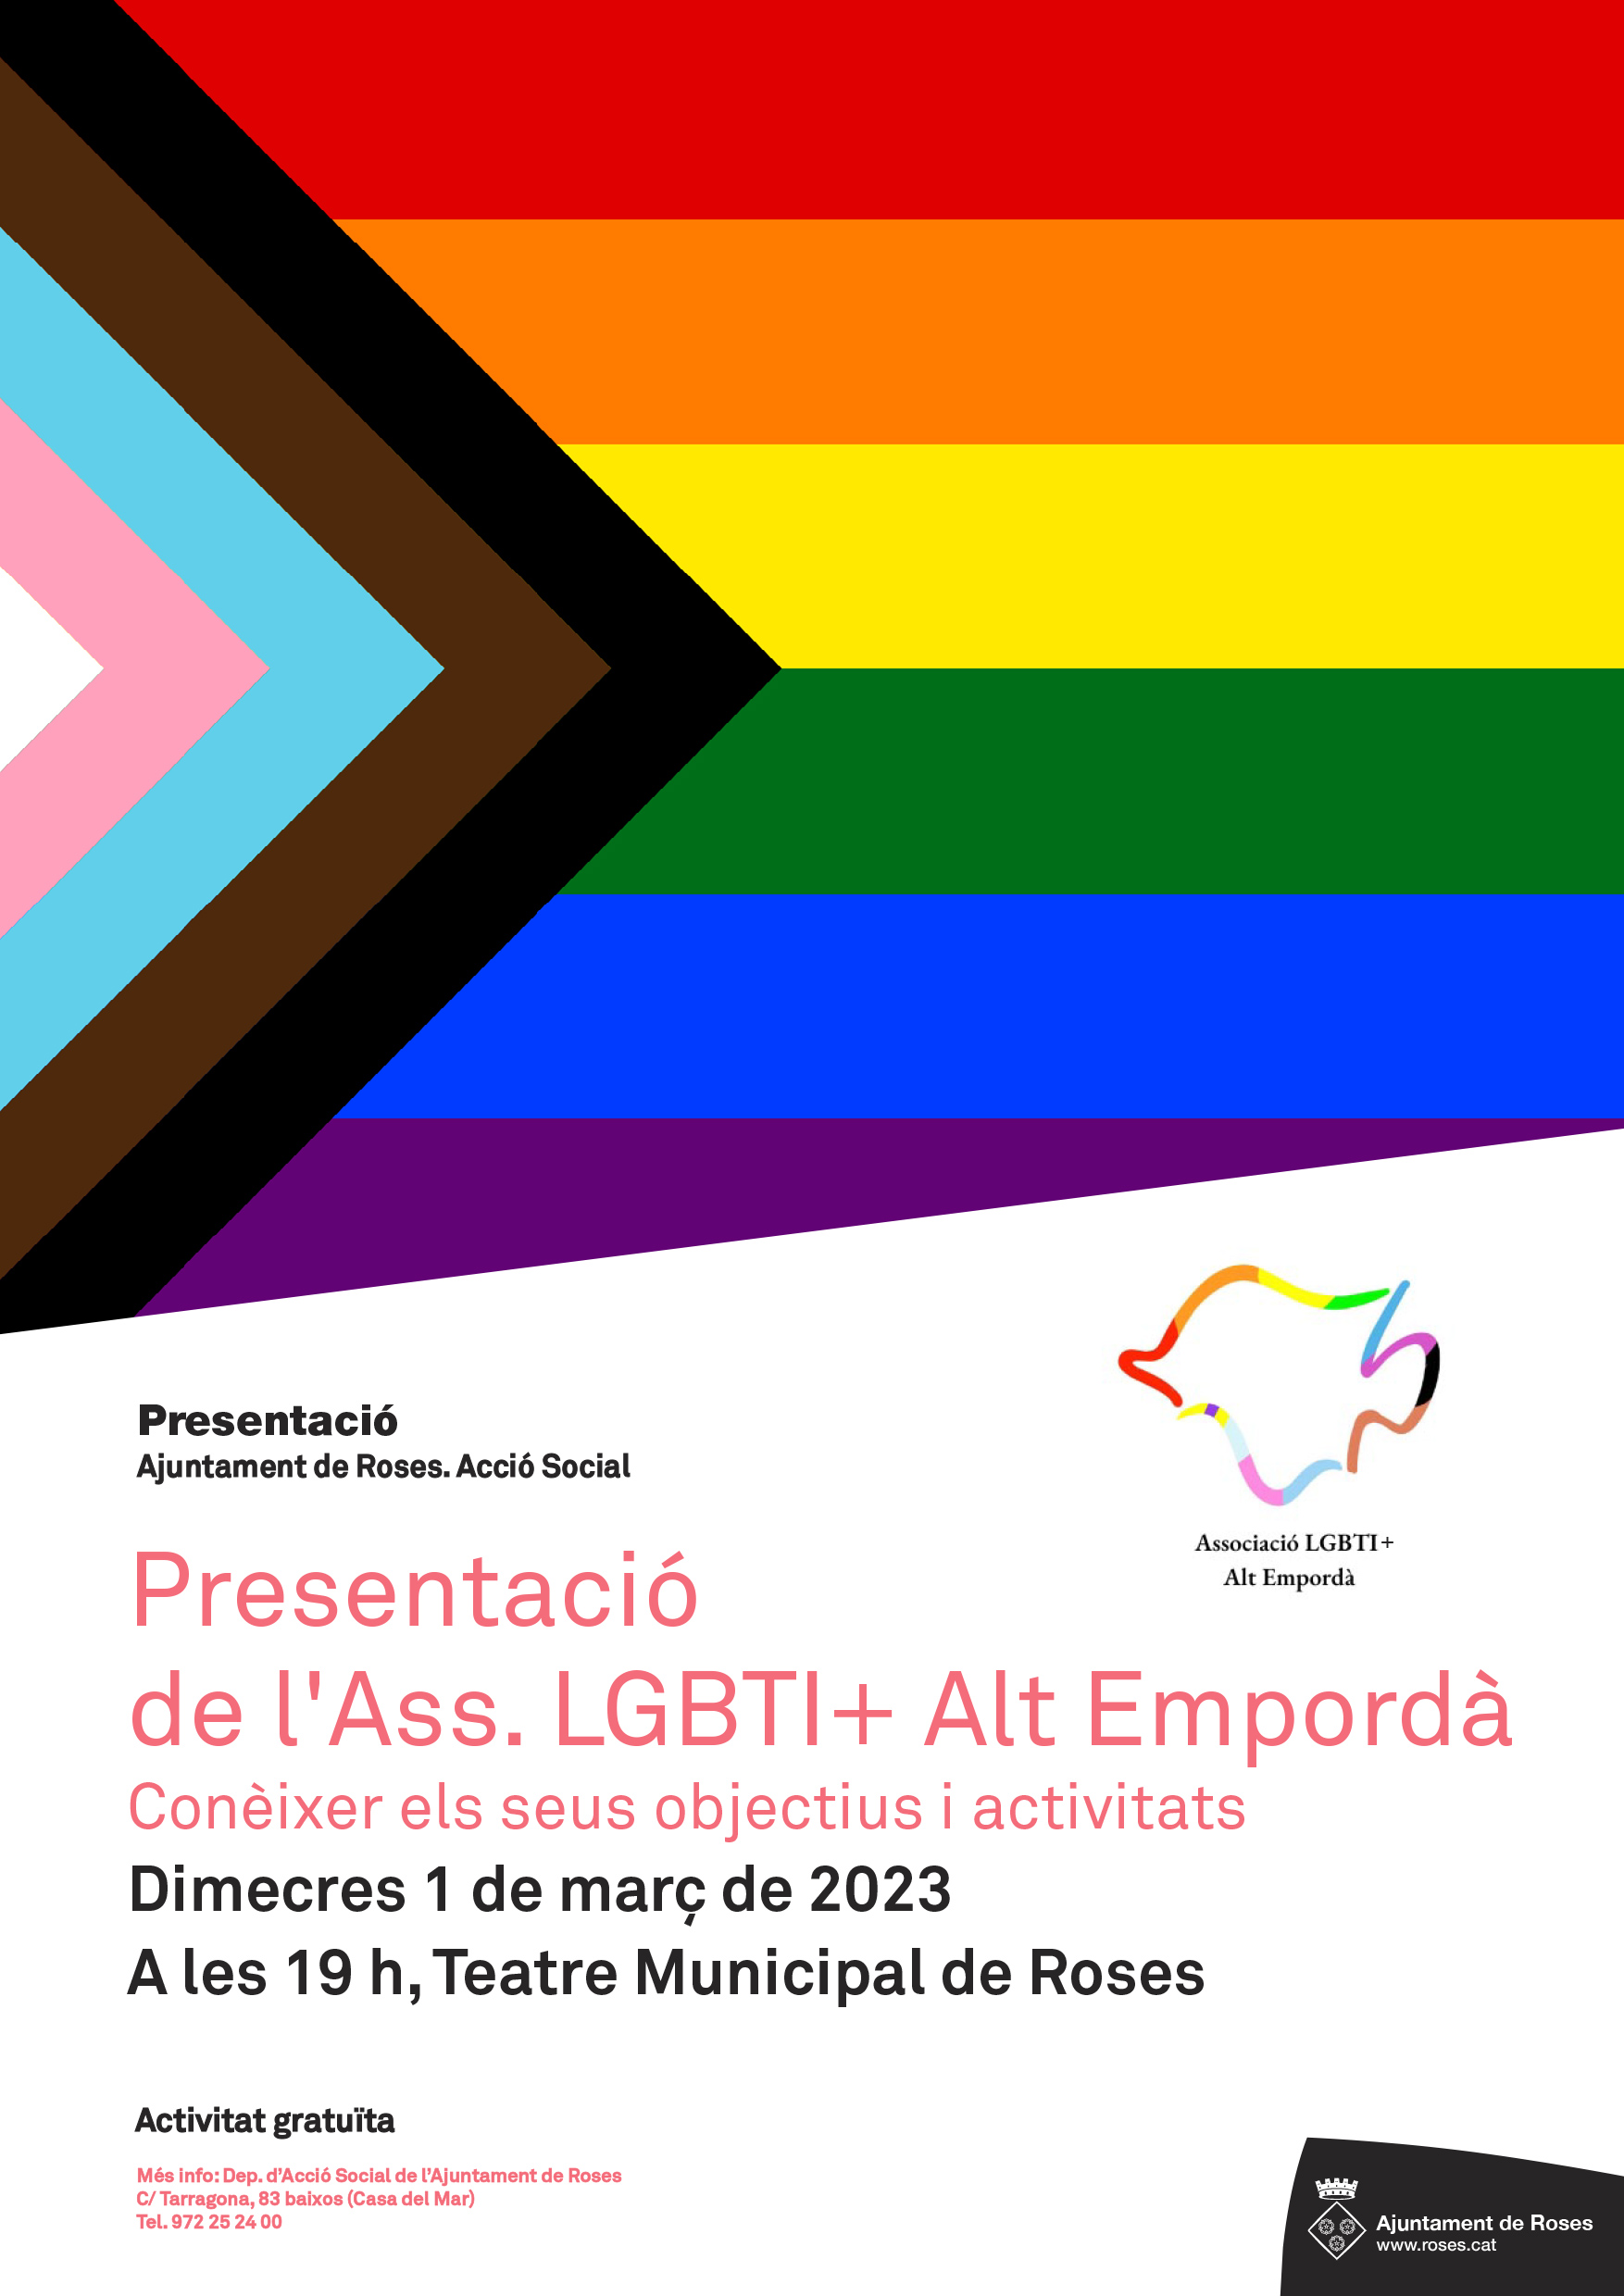 L’Associació LGTBI+ Alt Empordà es presenta a Roses en un acte al Teatre Municipal el proper 1 de març